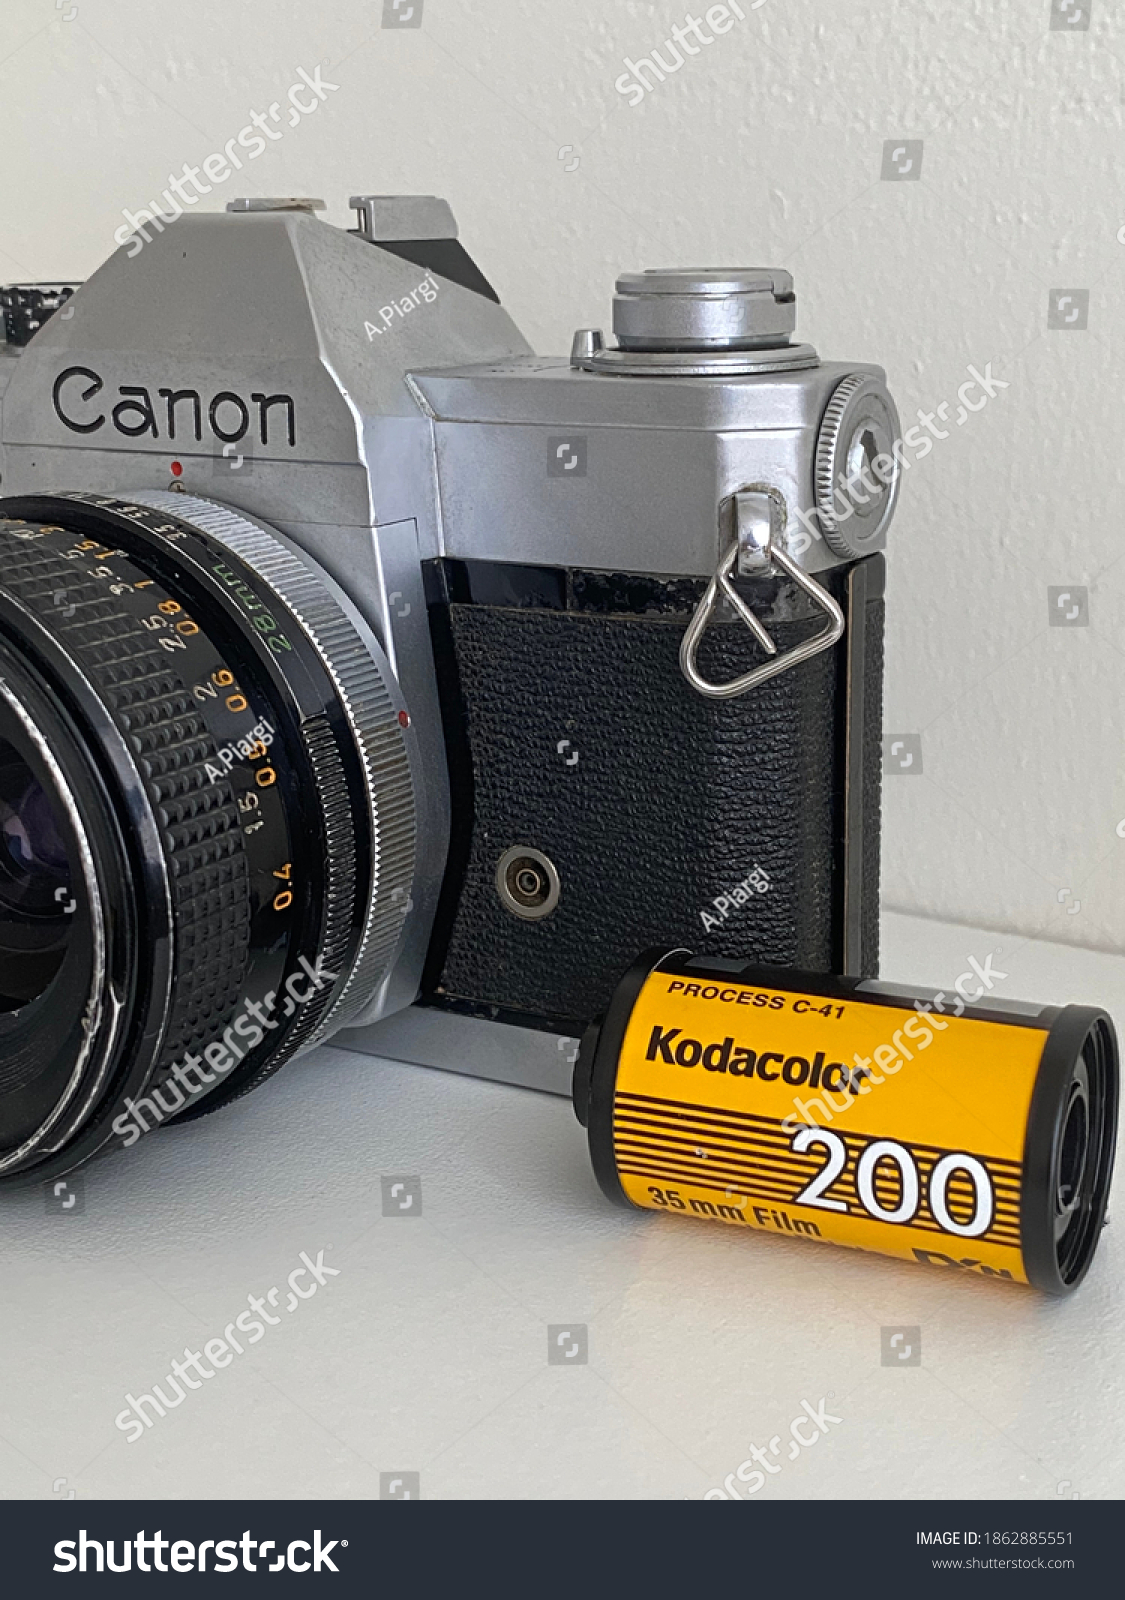 Analogue Camera Canon Ftb Ql Kodak Stock Photo 1862885551 